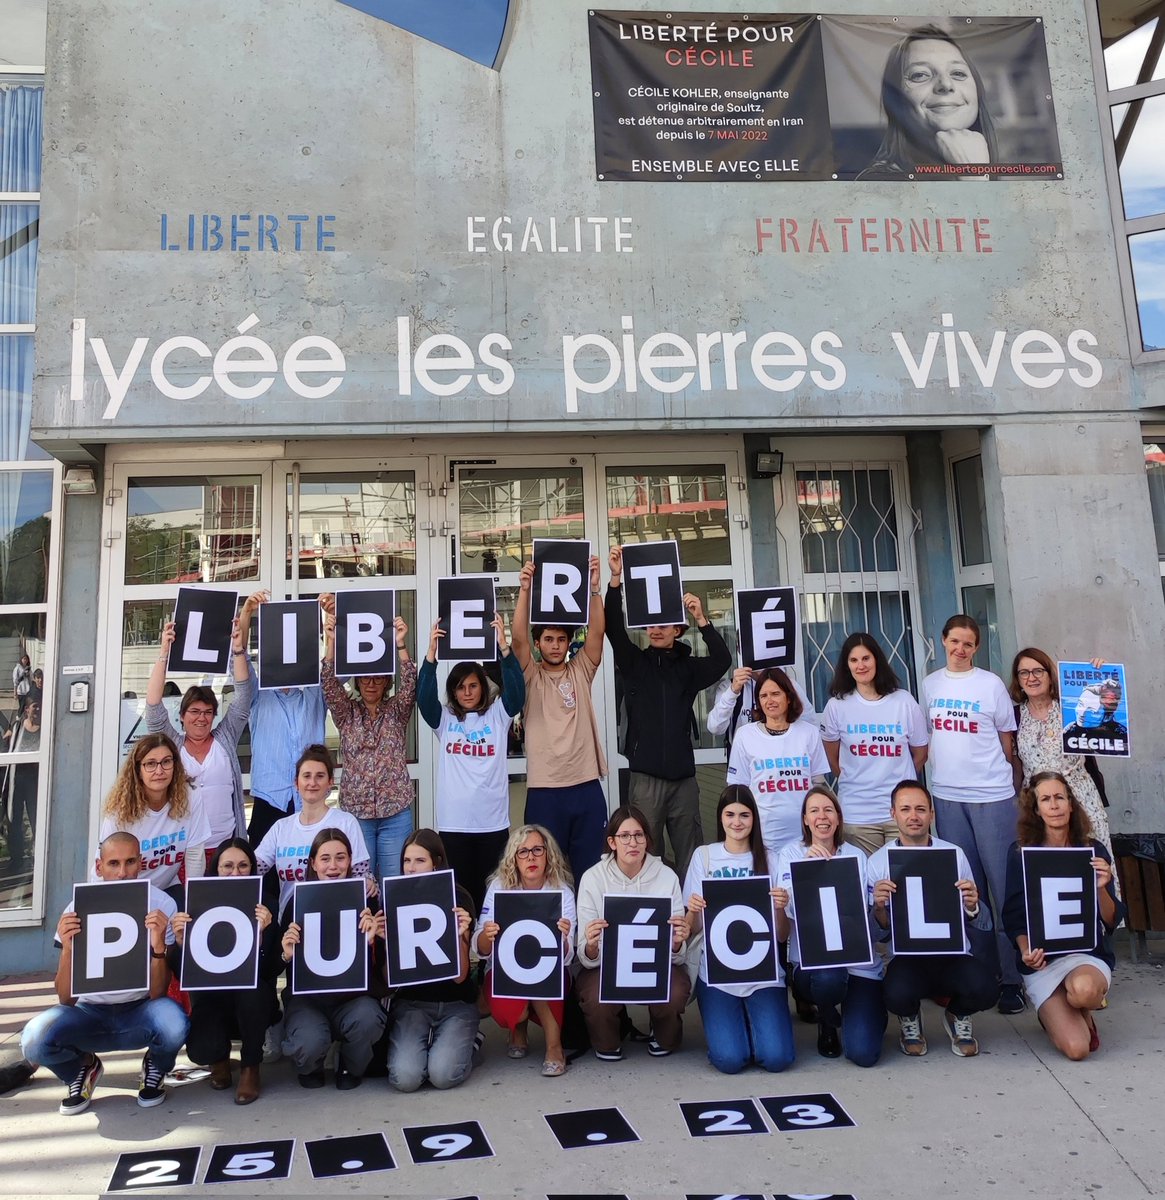 Profs et élèves unis pour Cécile Kohler le jour de son 39e anniv.
Détenue injustement depuis le 7 mai 2022, elle est innocente et nous demandons sa libération.
Nous sommes sans nouvelle depuis + d'un mois. Le silence et l'absence deviennent insupportables. 
#libertépourCécile